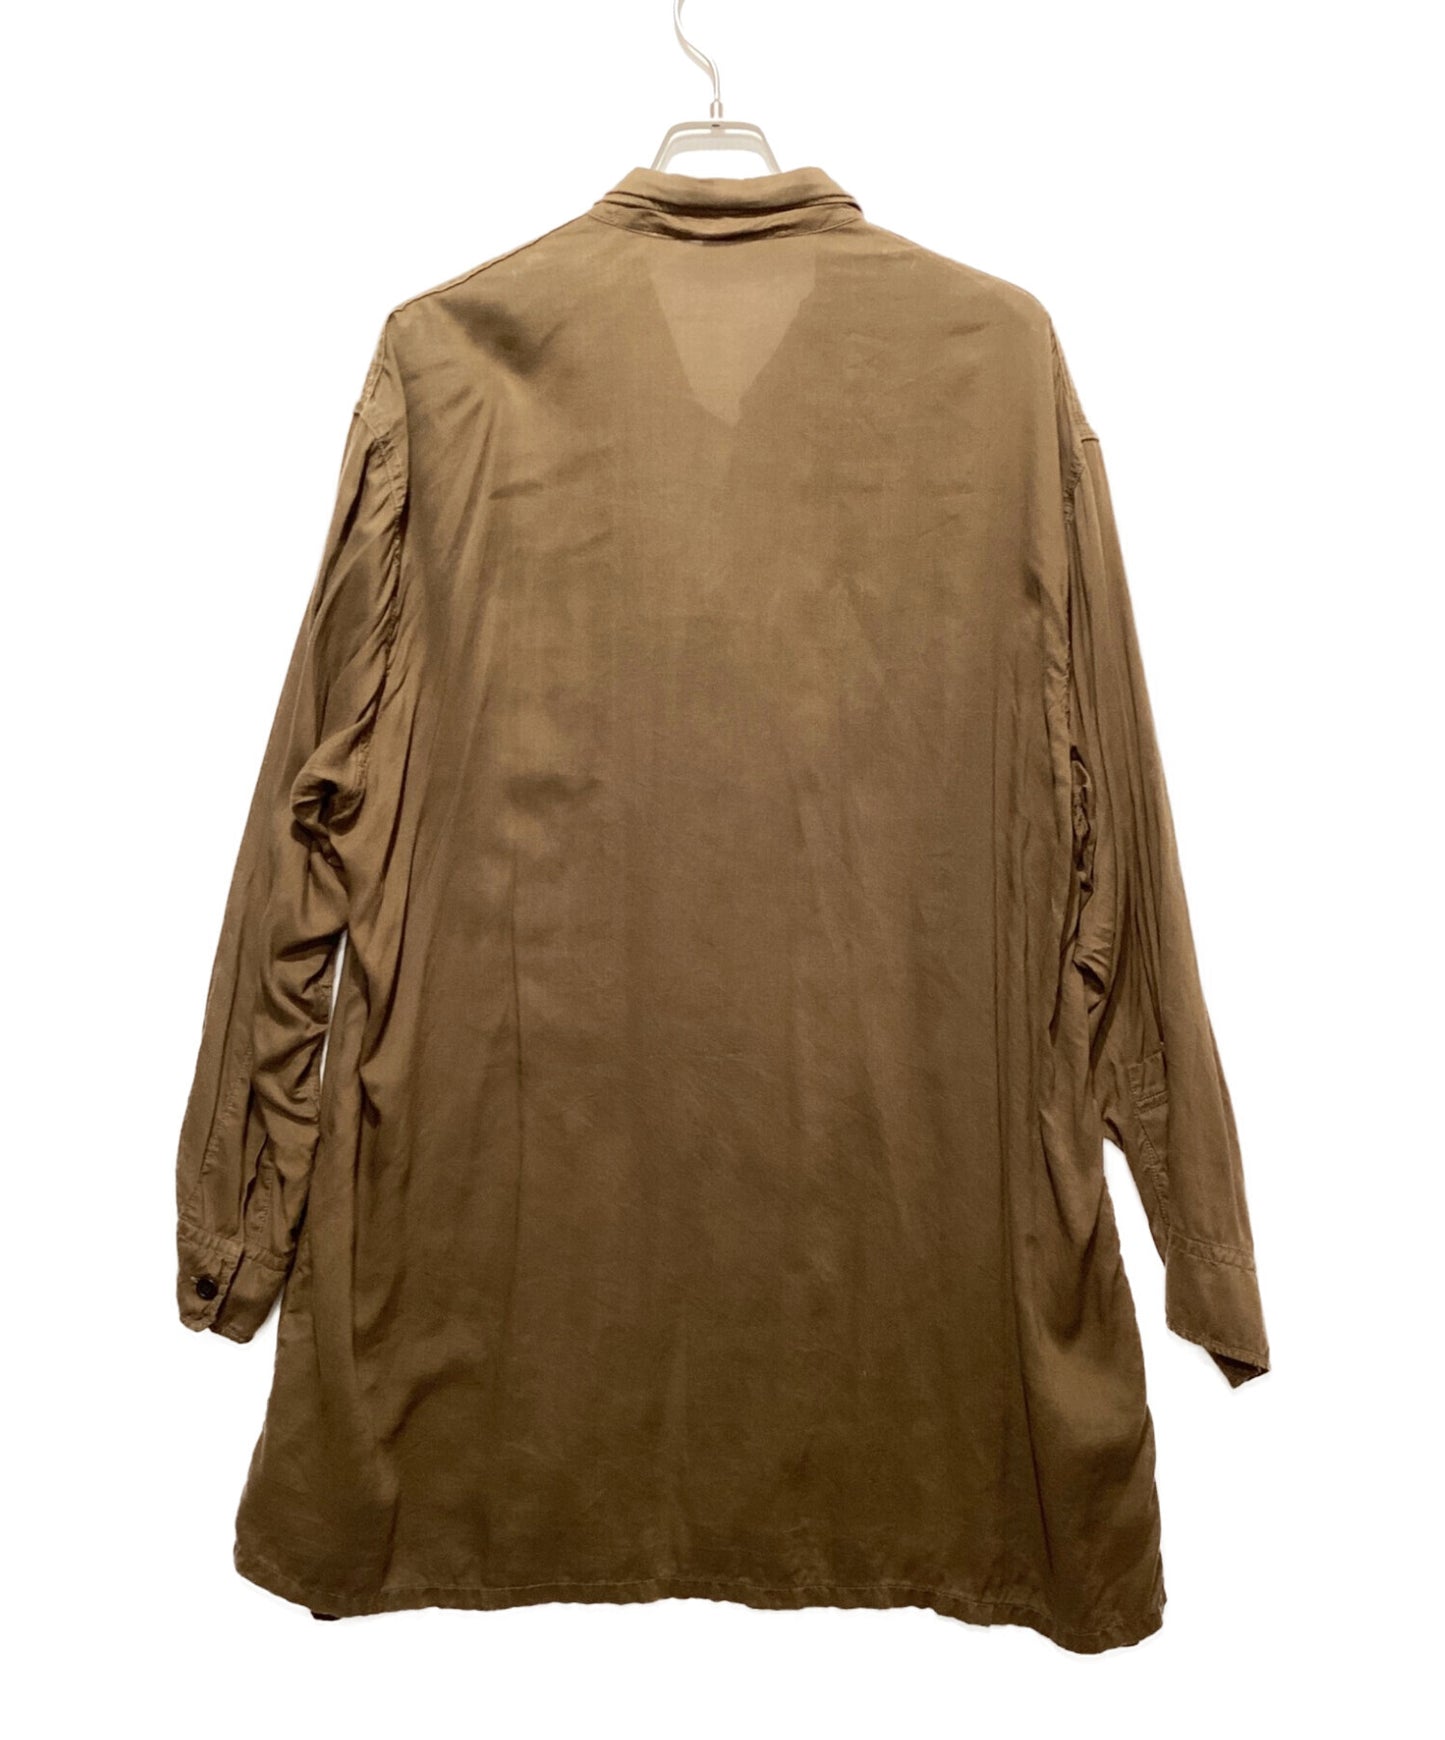 Yohji Yamamoto Pour Homme เซลลูโลสเสื้อผ้าย้อมสนามหญ้าเปิดปลอกคอเสื้อ HX-B08-200